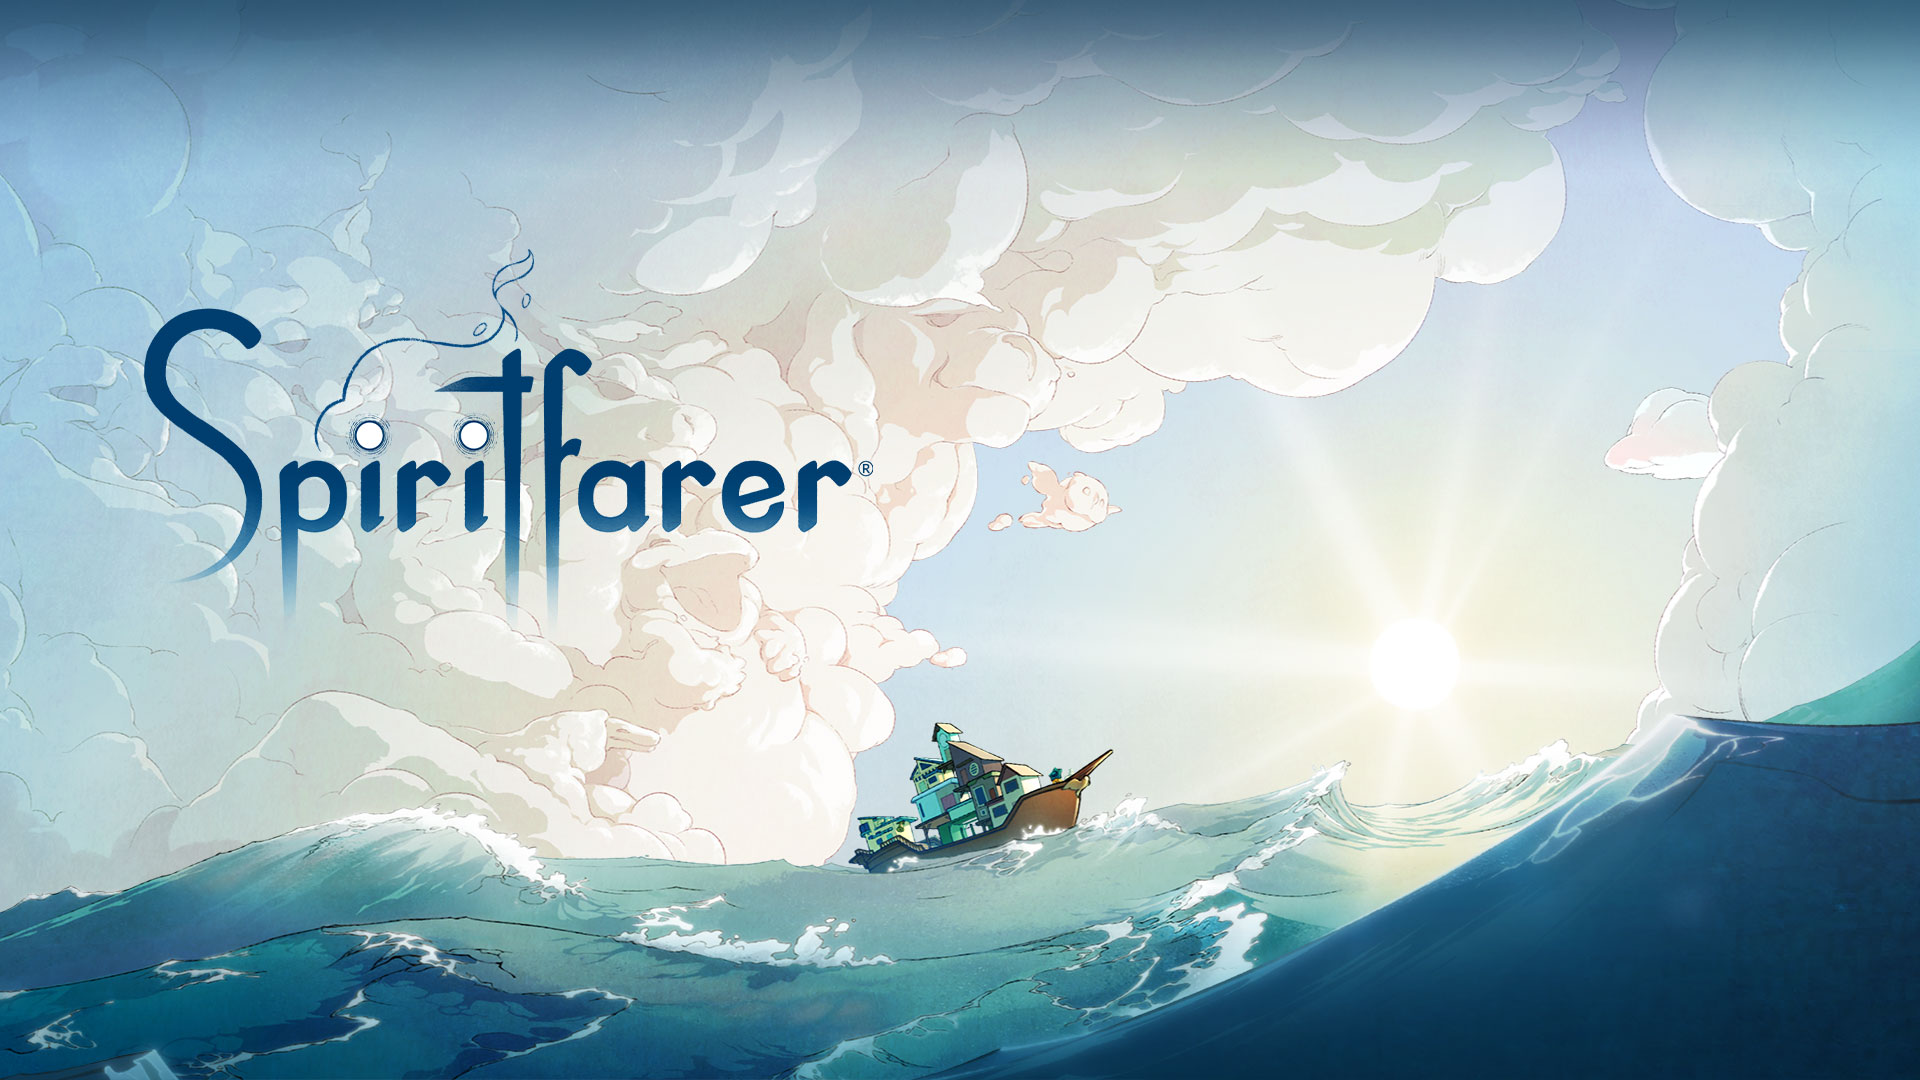 Logótipo do Spiritfarer, um barco na água com nuvens em formato de diversos animais